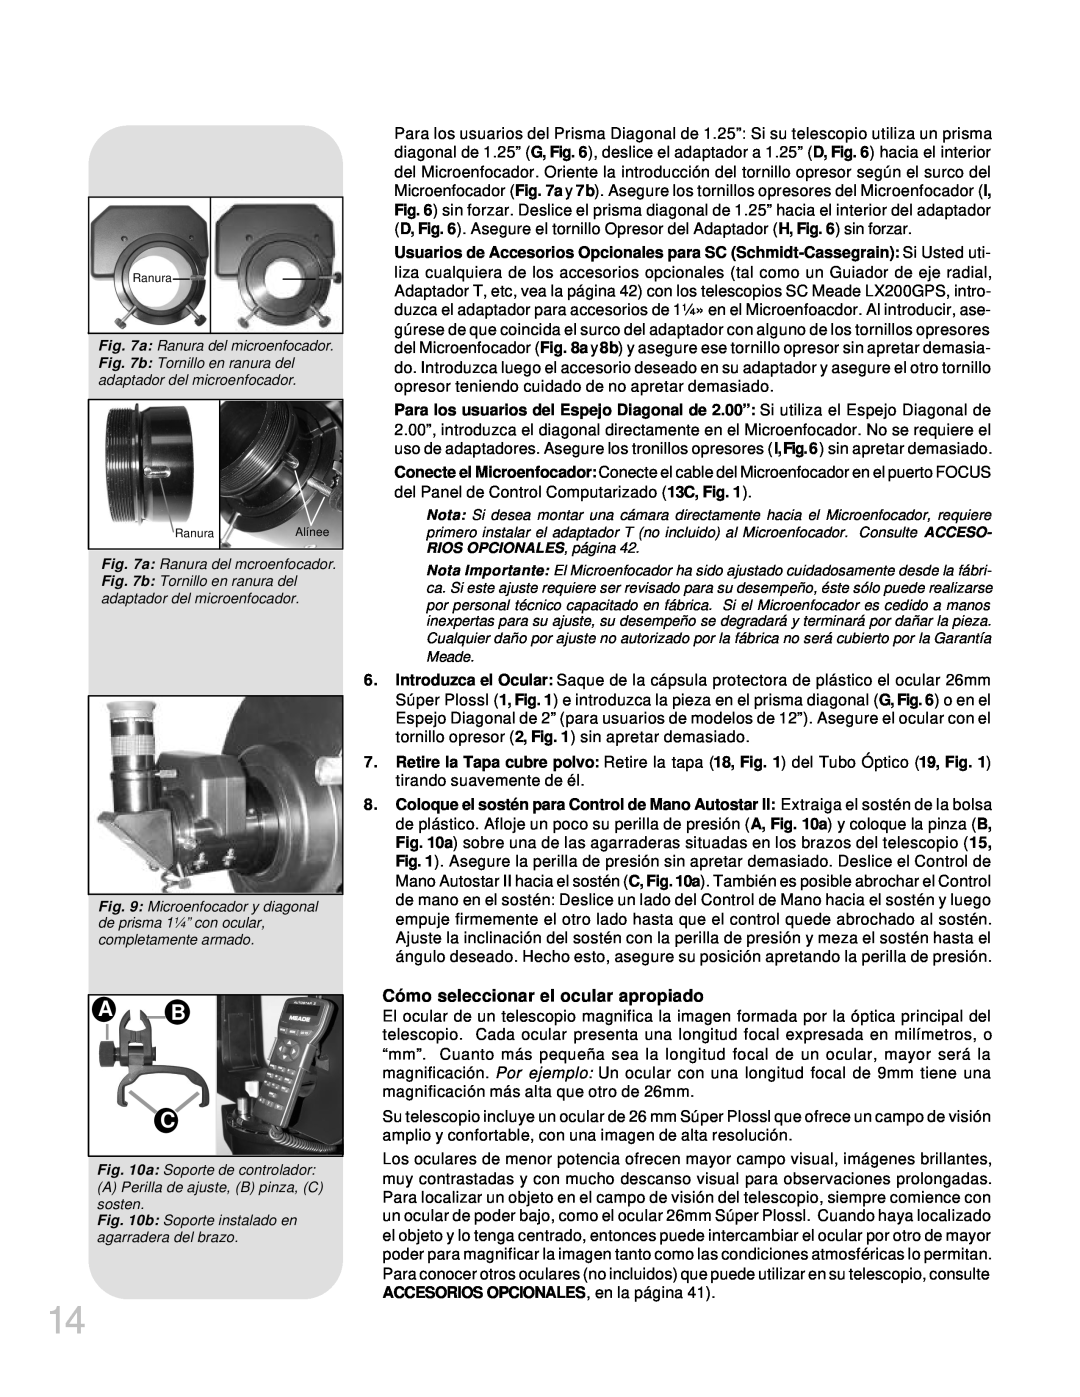 Meade LX200GPS manual A B C, Cómo seleccionar el ocular apropiado 